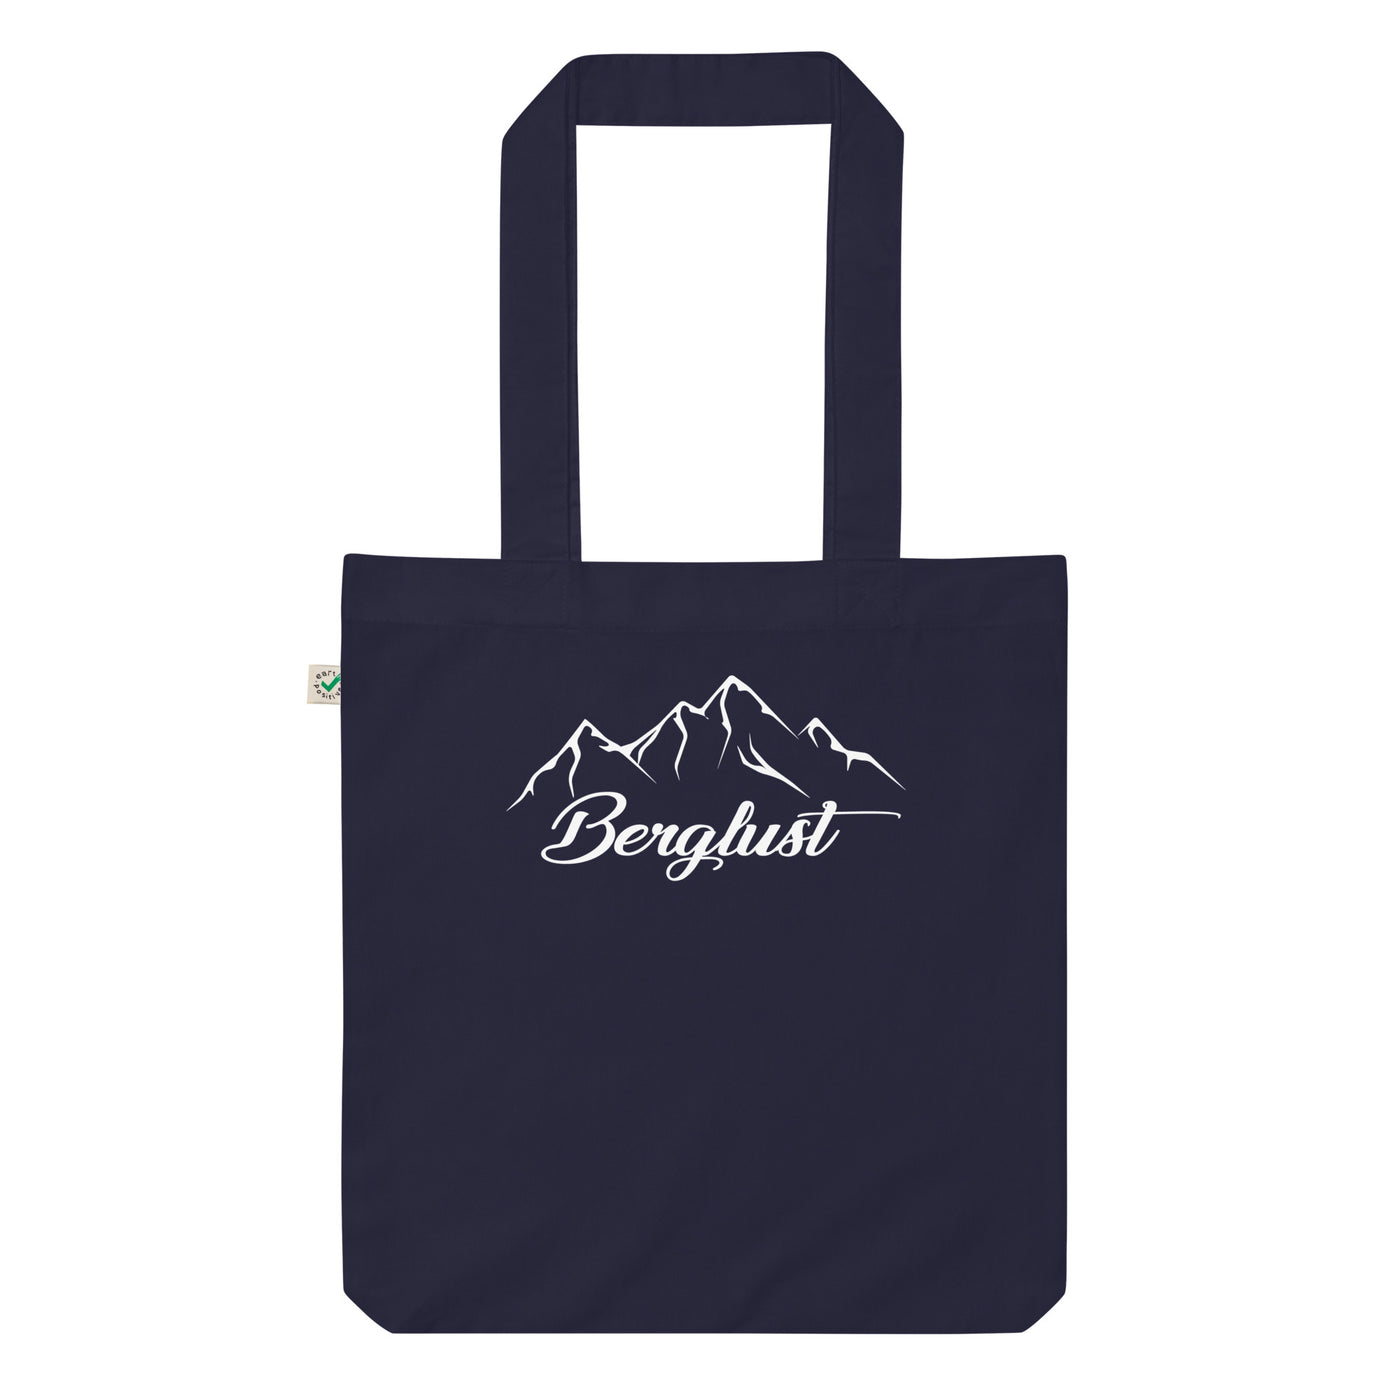 Berglust - (12) - Organic Einkaufstasche berge